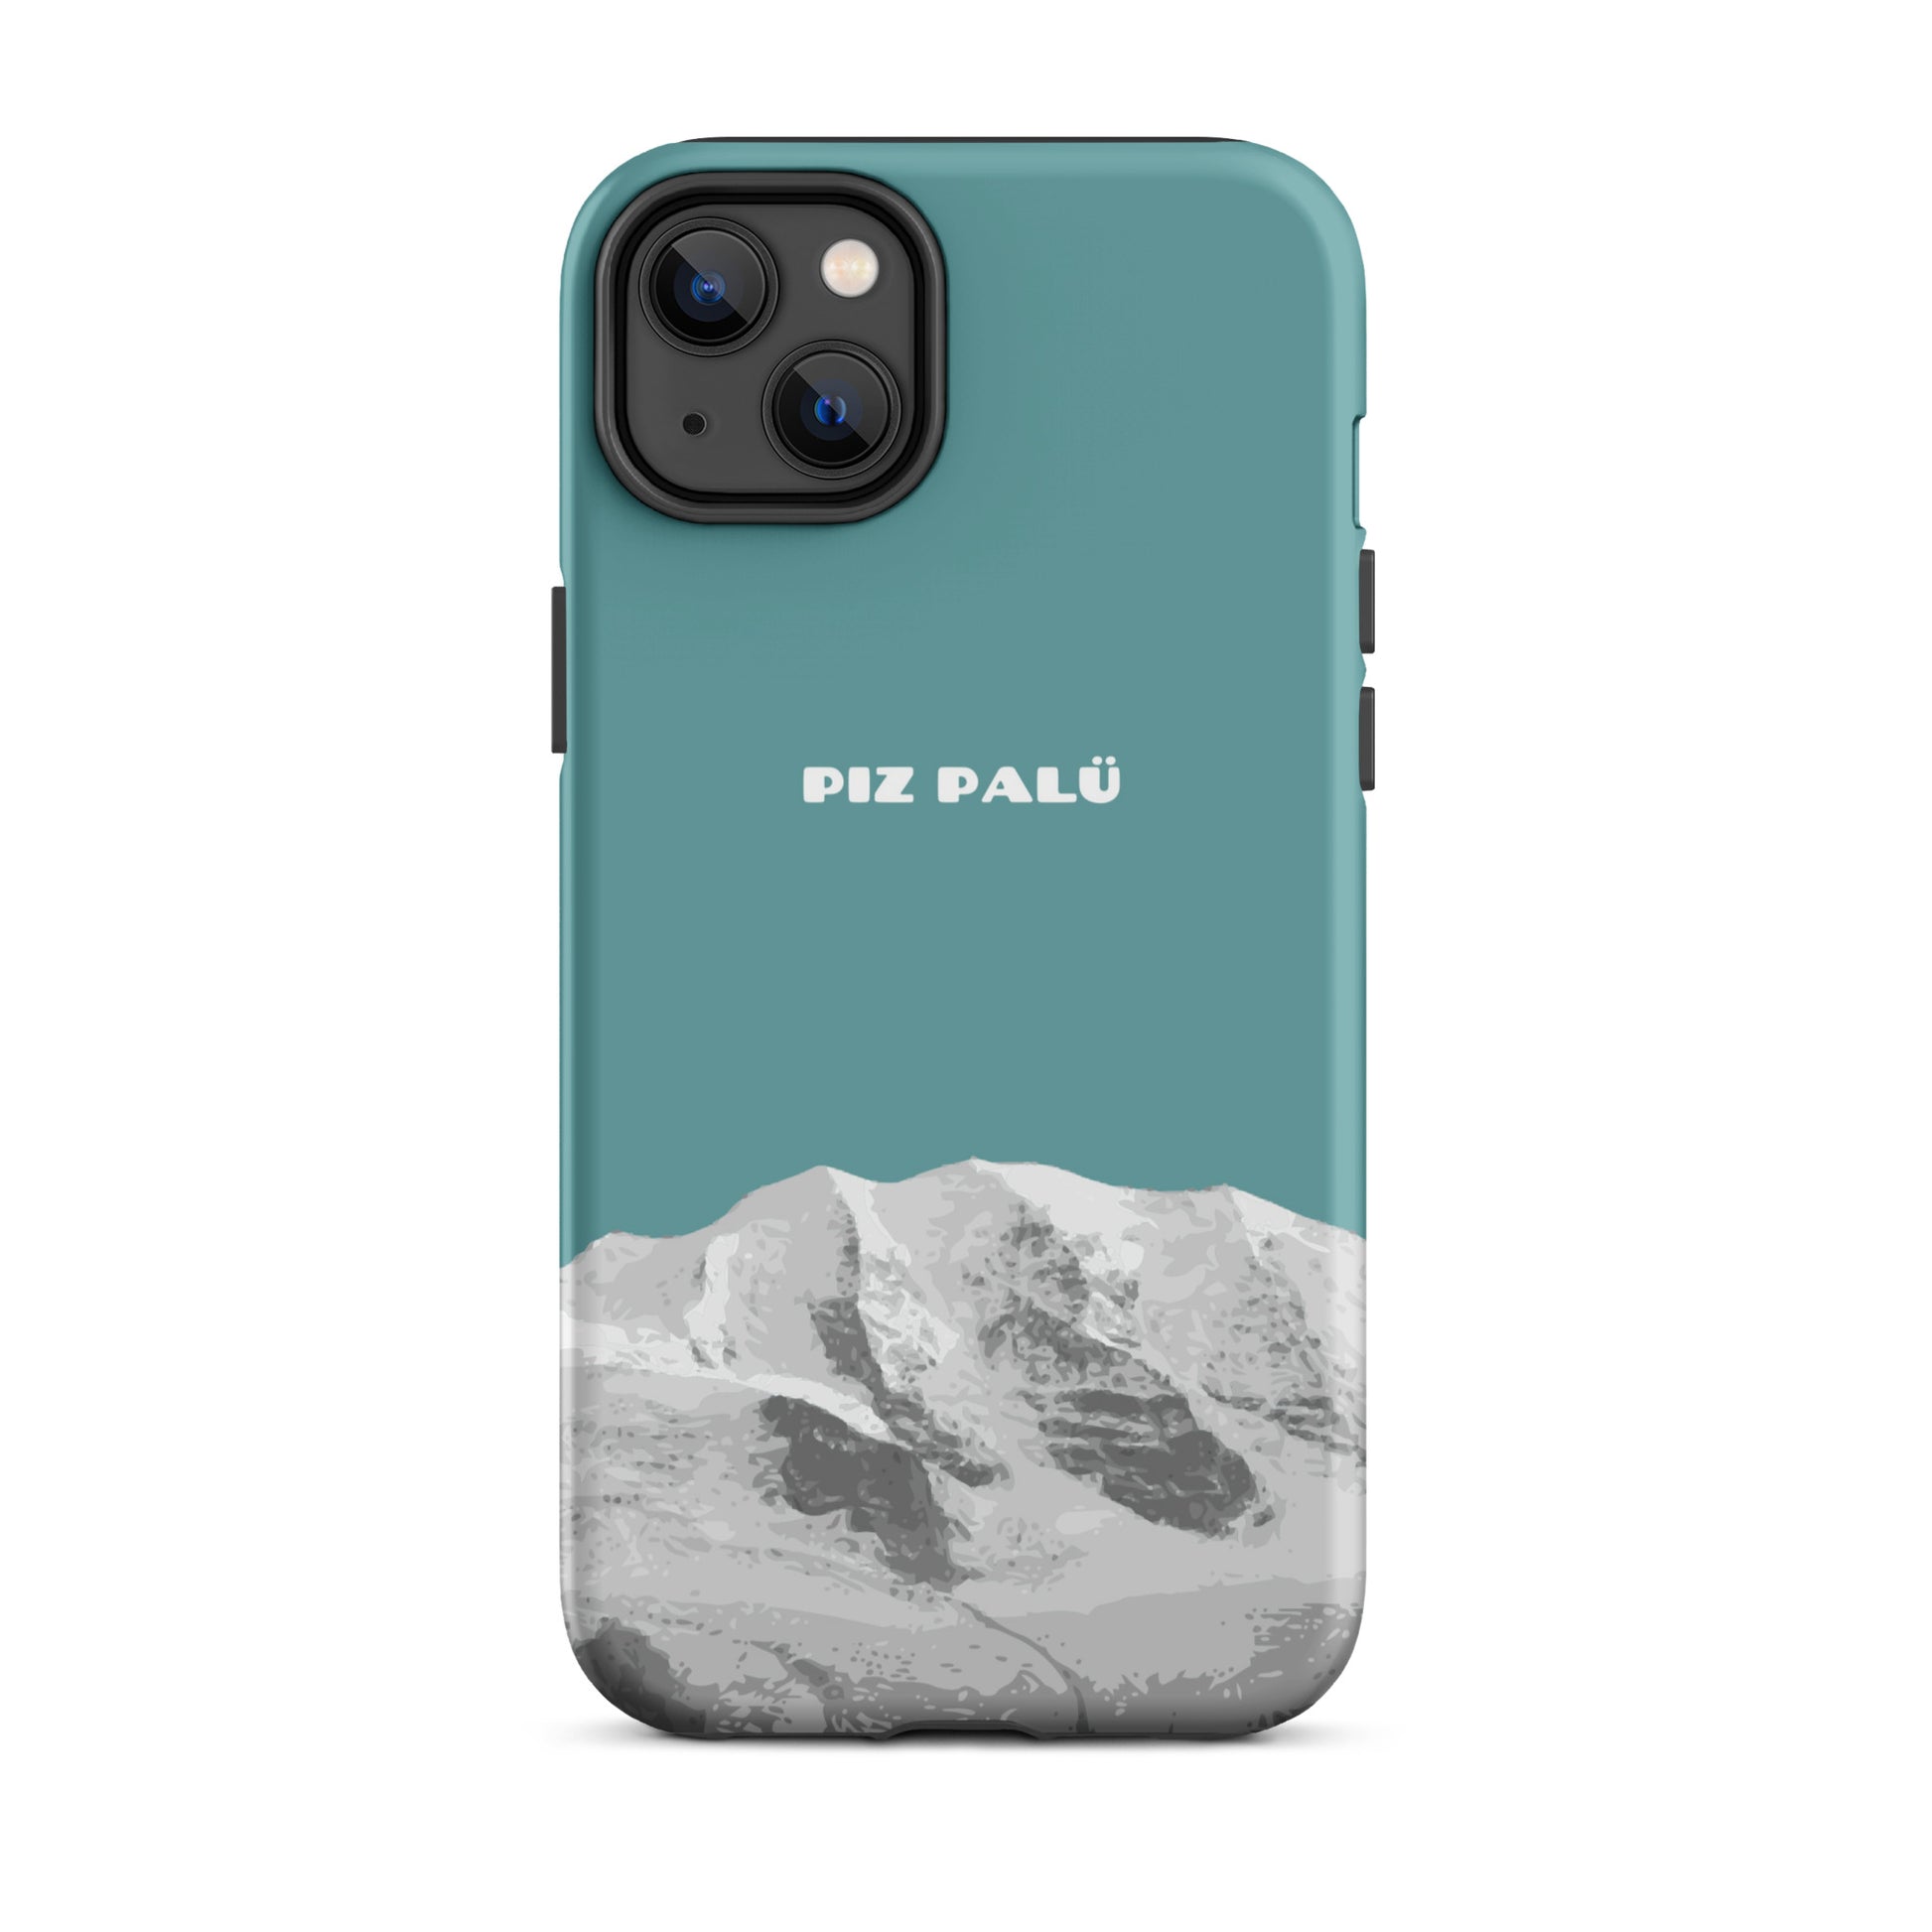 Hülle für das iPhone 14 Plus von Apple in der Farbe Kadettenblau, dass den Piz Palü in Graubünden zeigt.